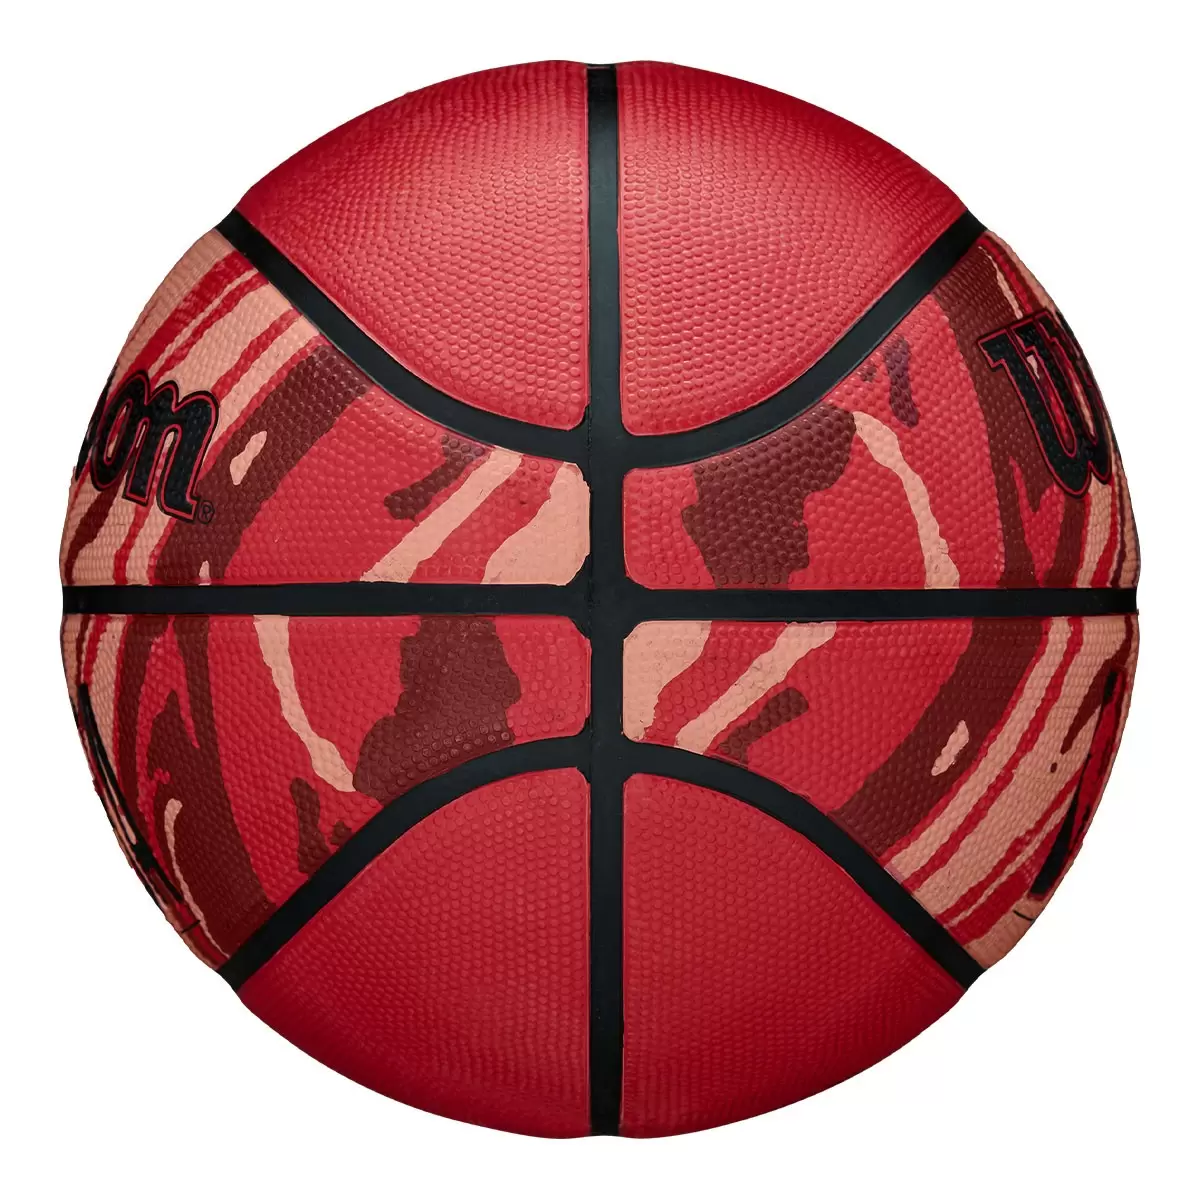 威爾森 橡膠籃球 NBA DRV 系列 PLUS 火紋紅 (7號)